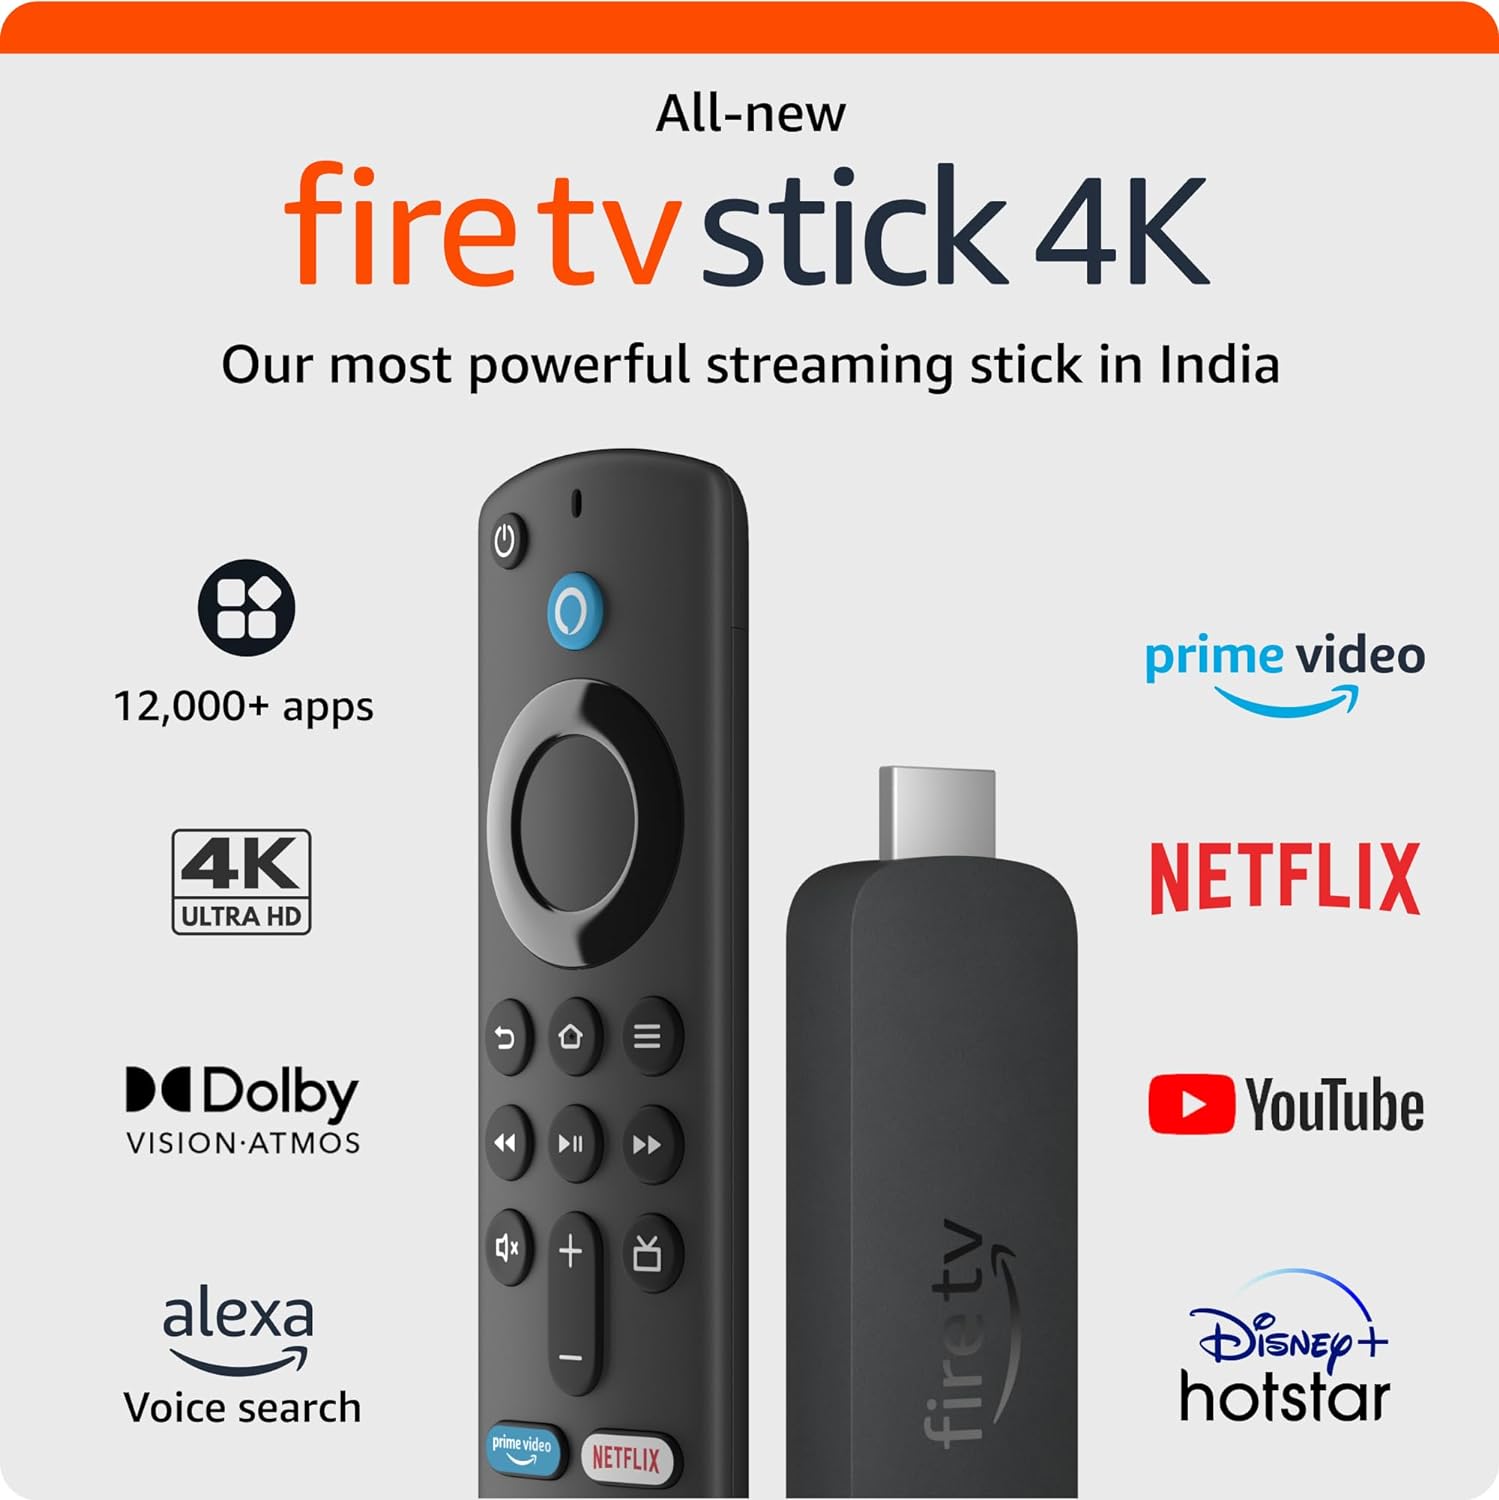 भारत में लॉन्च हुआ Amazon Fire TV Stick 4K, जानिए कितनी है कीमत और क्या है खासियत?